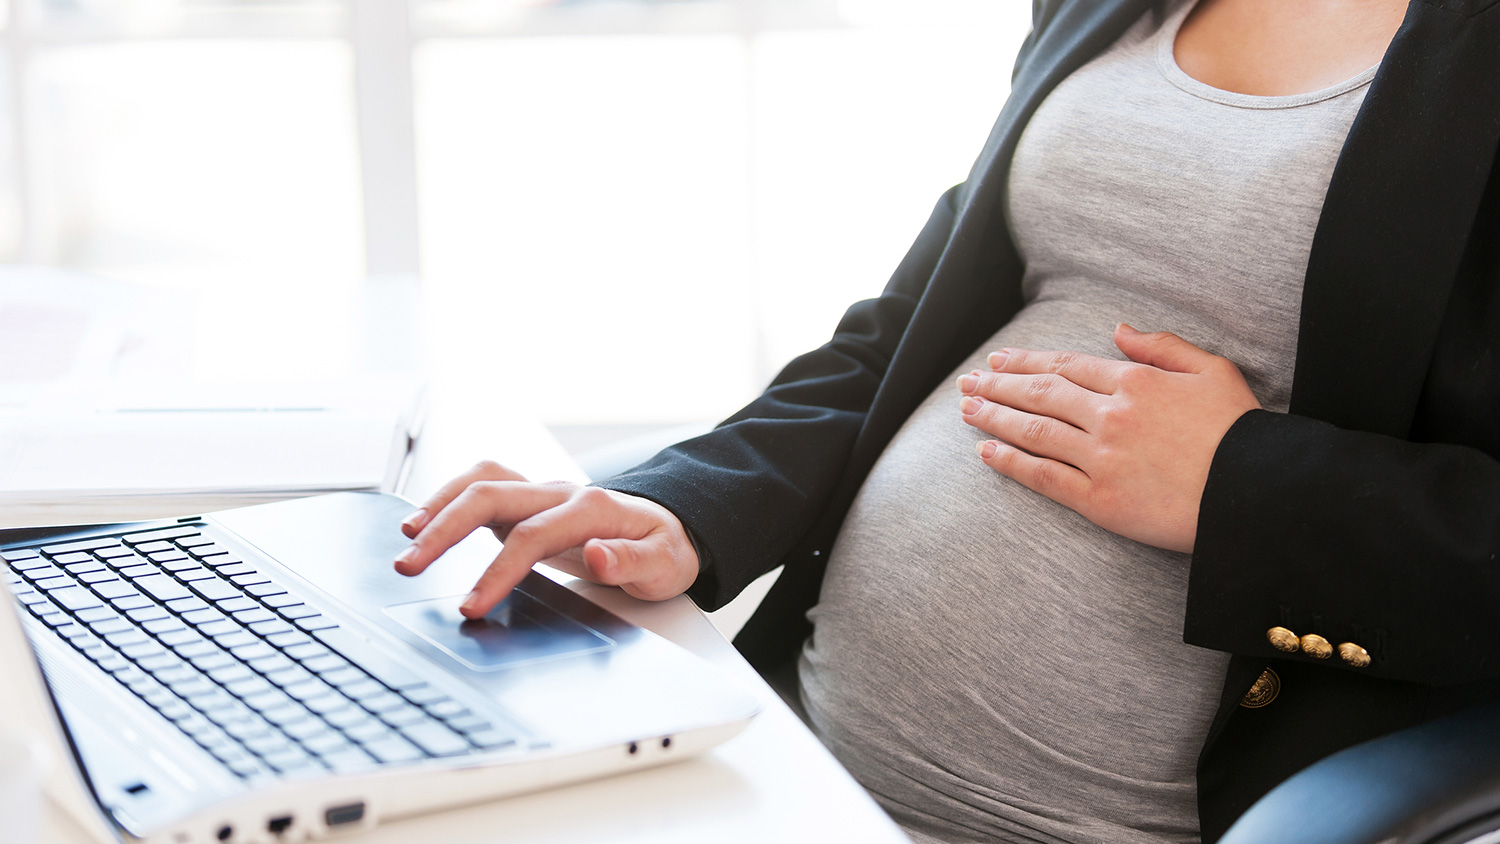 A pregnant woman sits at a desk